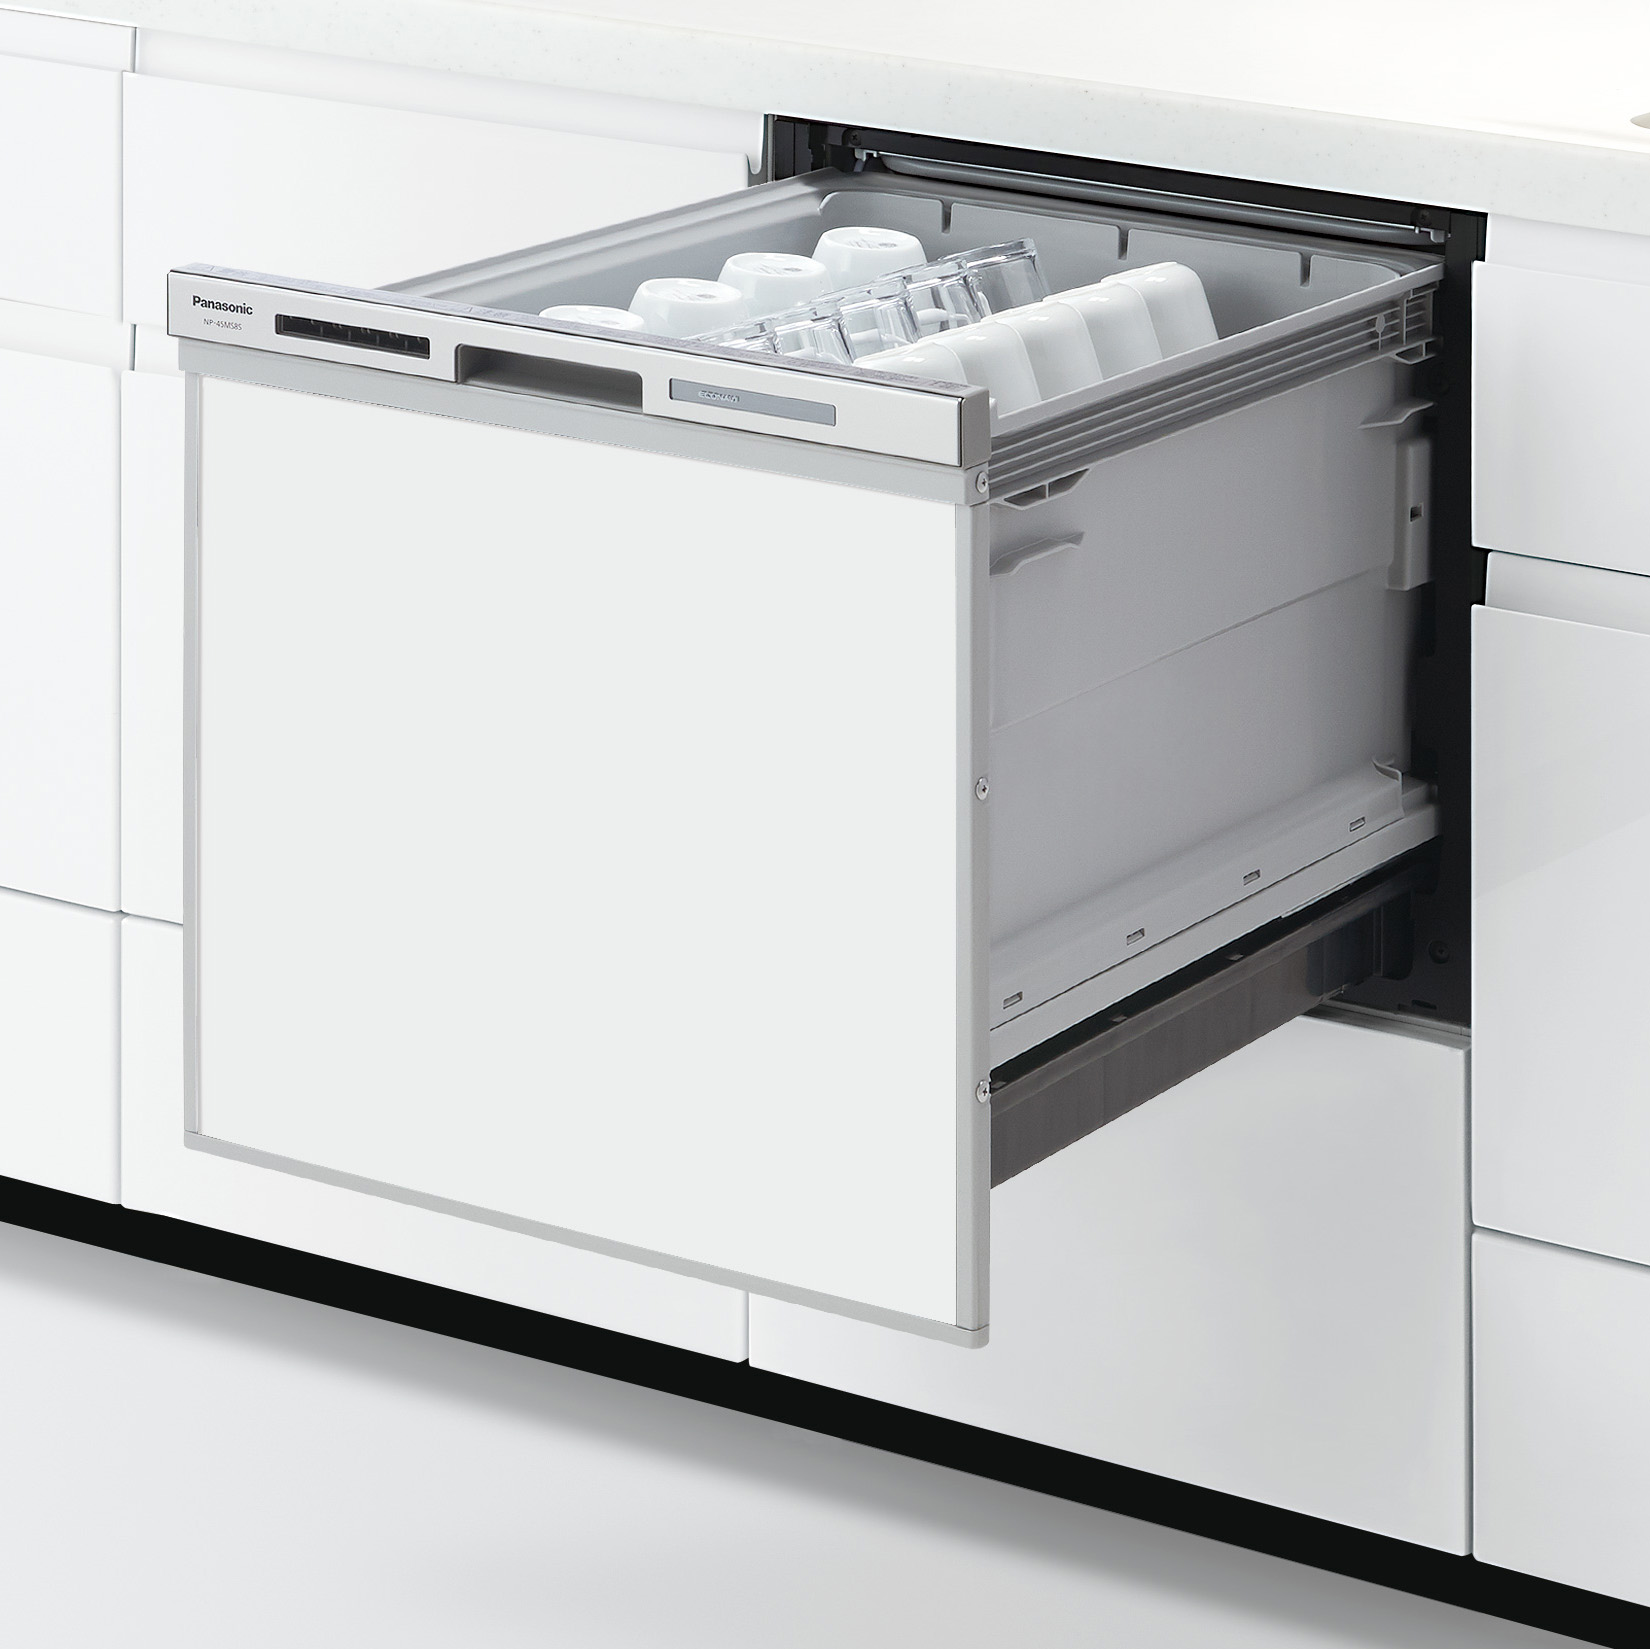 新型パナソニックビルトイン食器洗い乾燥機9シリーズ工事付き価格一覧